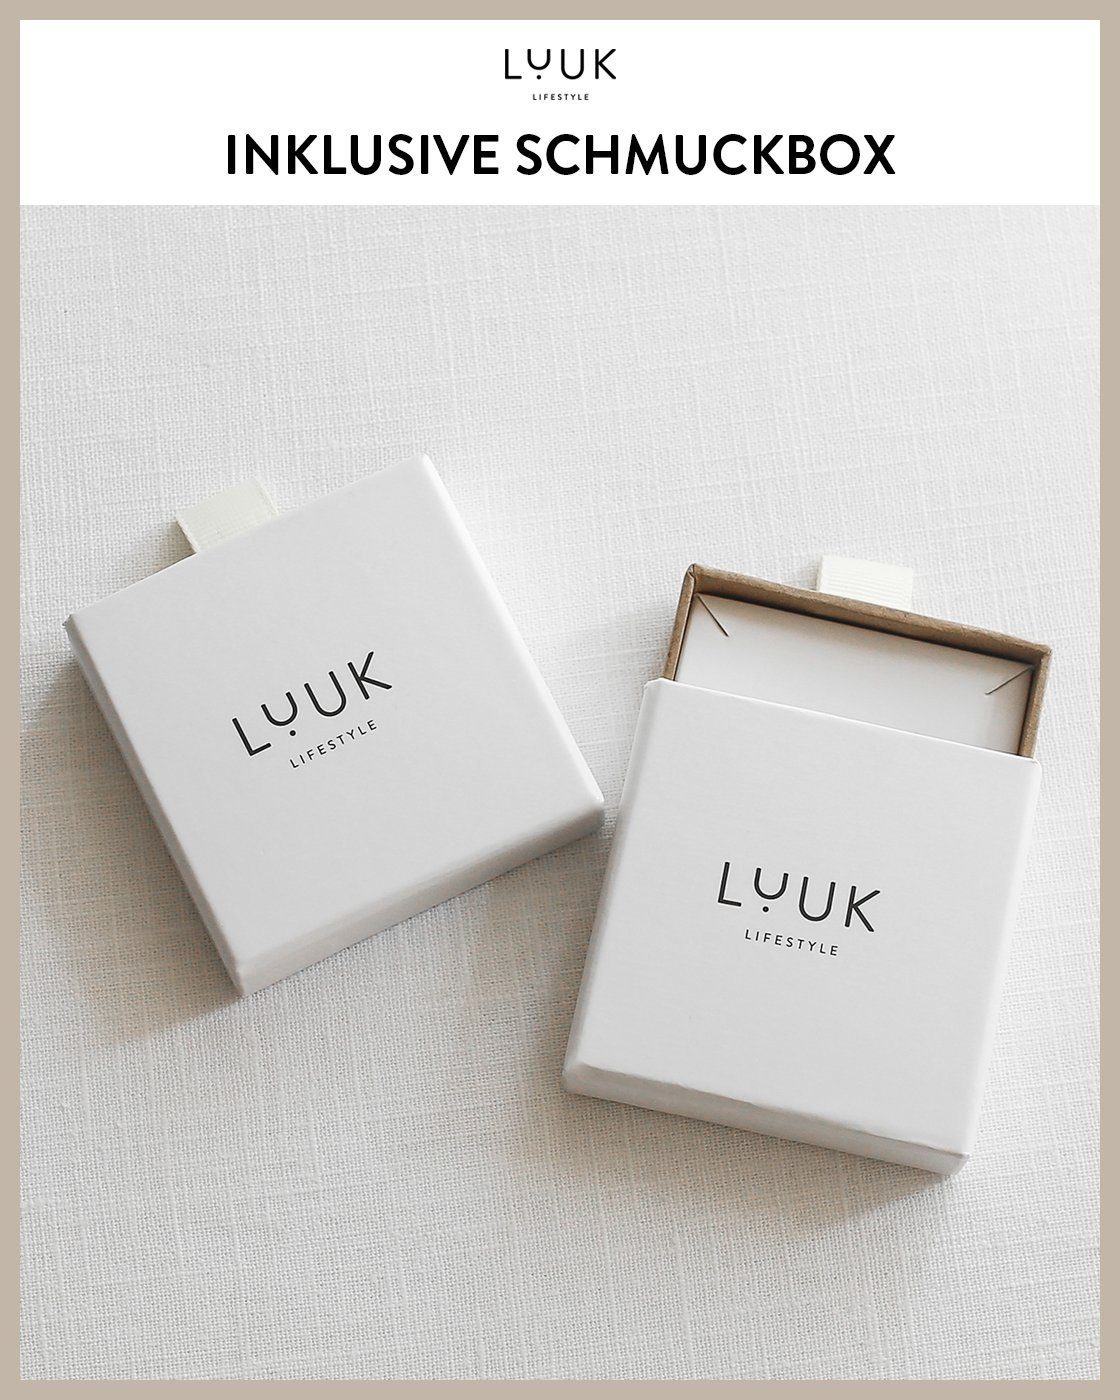 LUUK LIFESTYLE Paar Ohrstecker Blatt, & inklusive alltagstauglich, schöner Design, modernes Schmuckbox Silber wasserfest hautverträglich